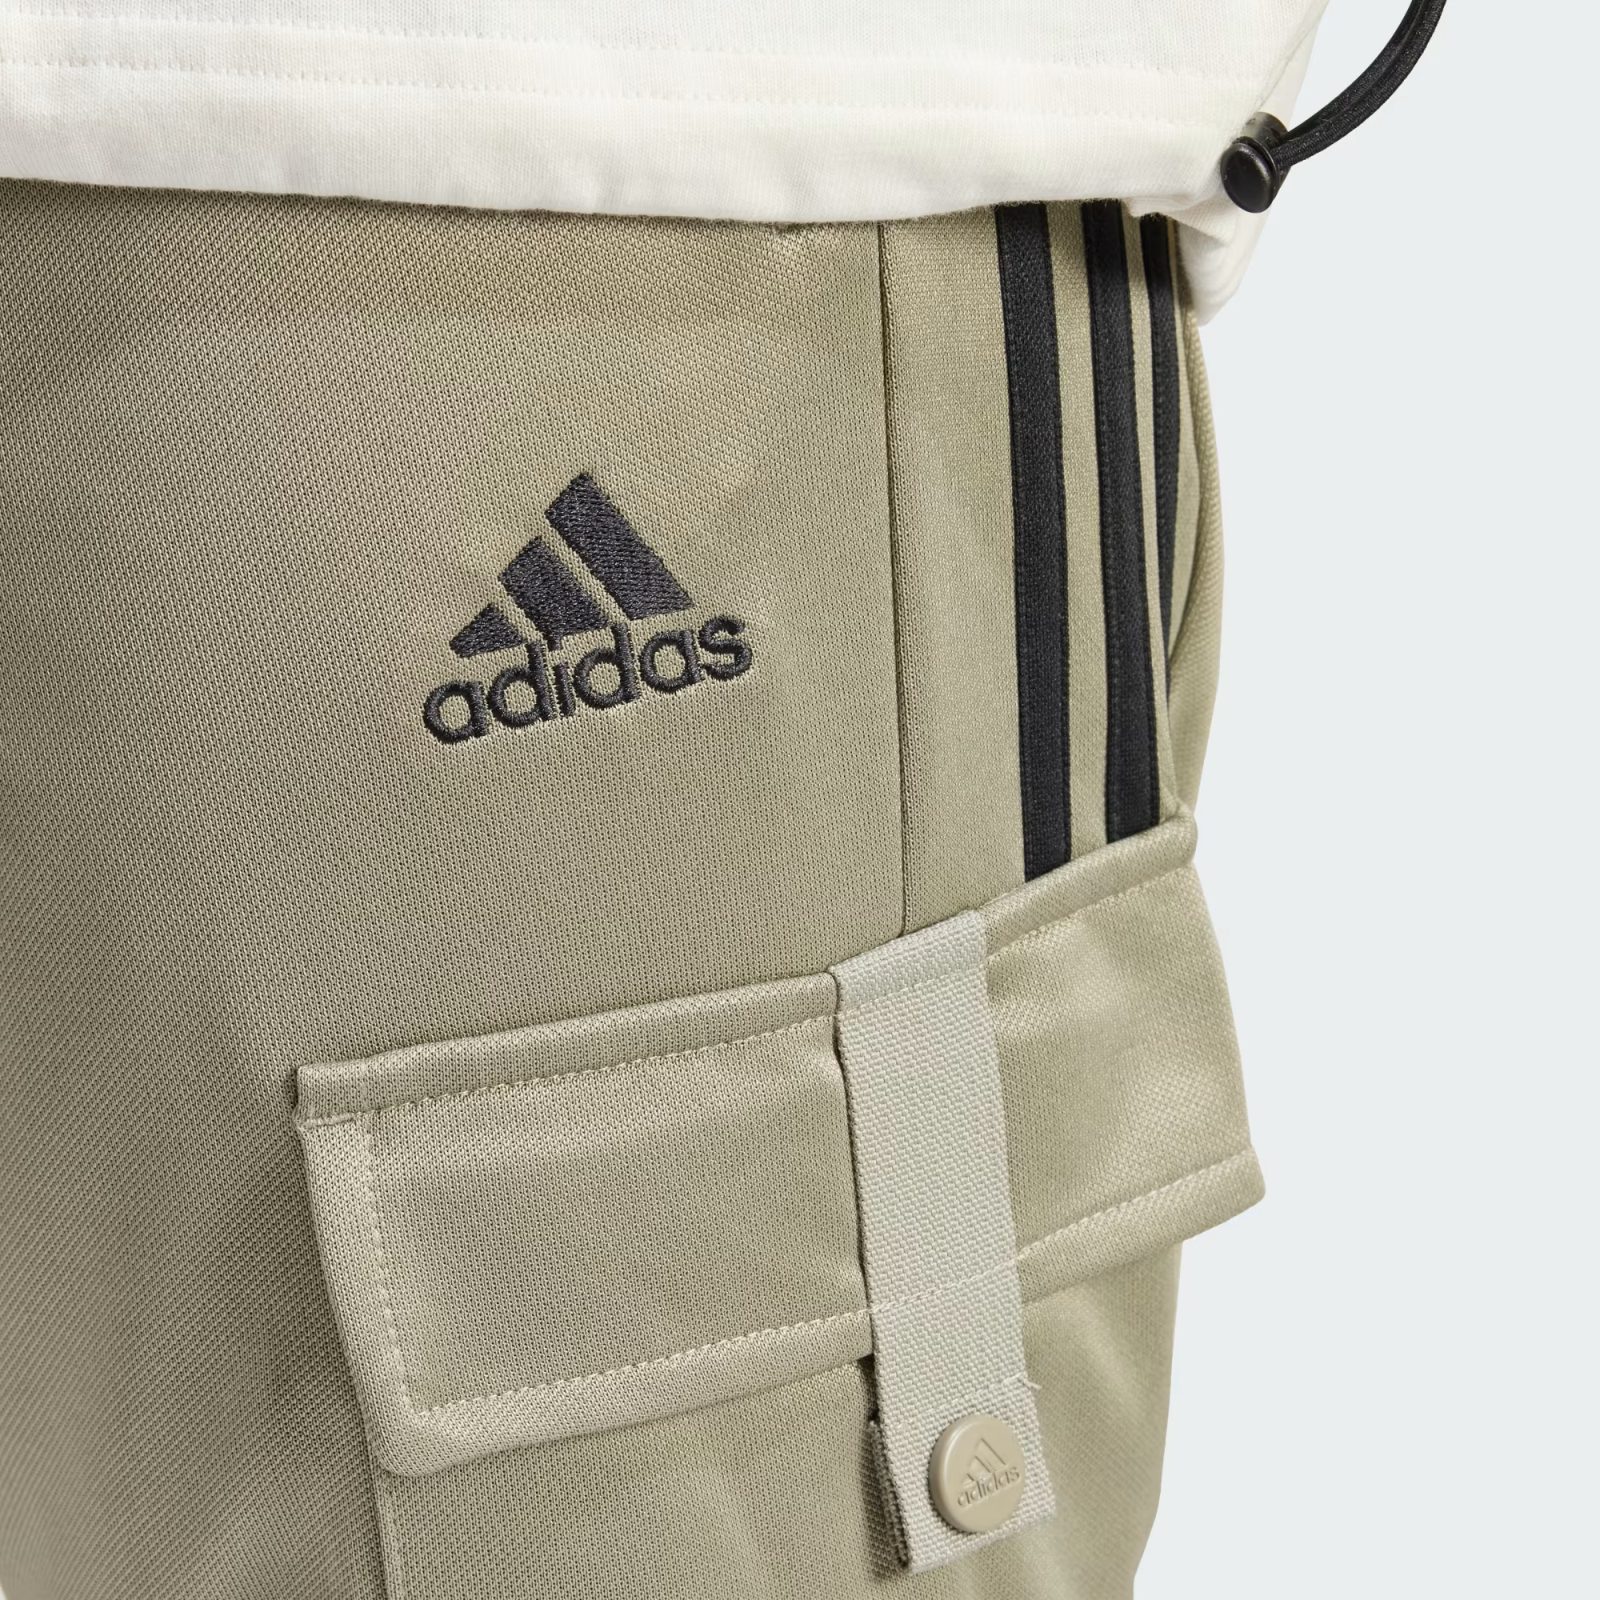 Adidas Uomo and similar Cargo 50 items Pantaloni Tiro Comfort